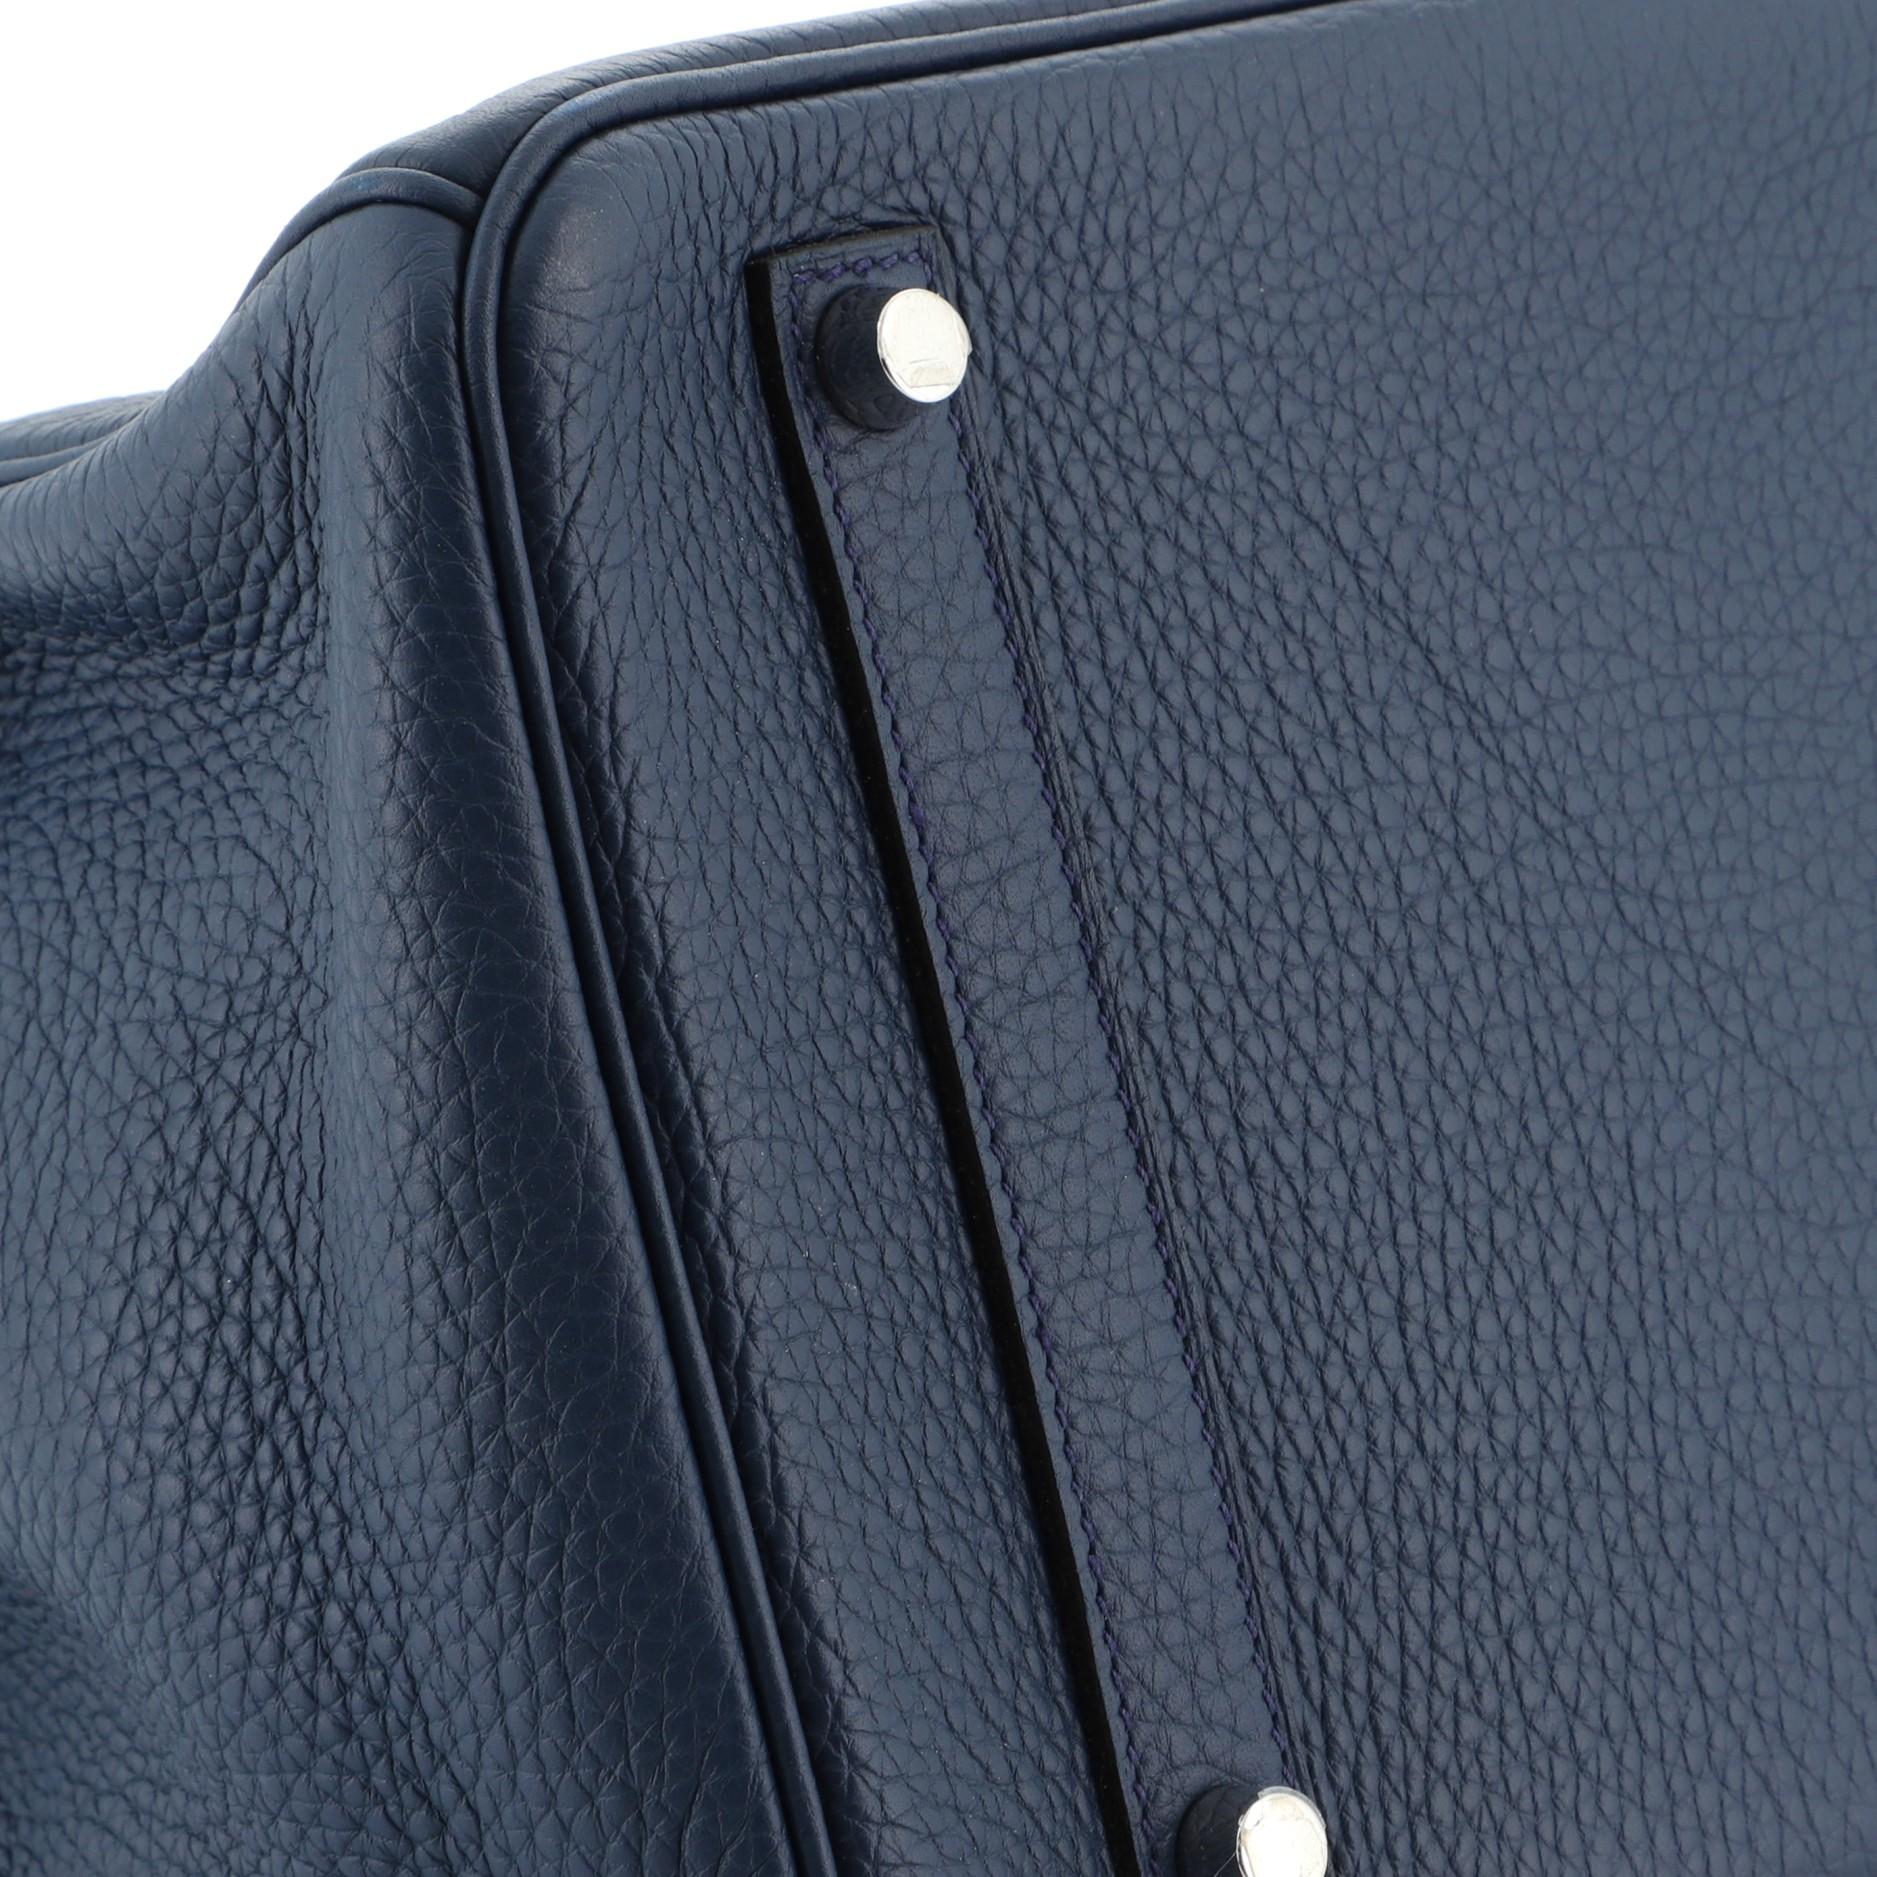 Women's or Men's Hermes Birkin Handbag Bleu de Malte Clemence with Palladium Hardware 35